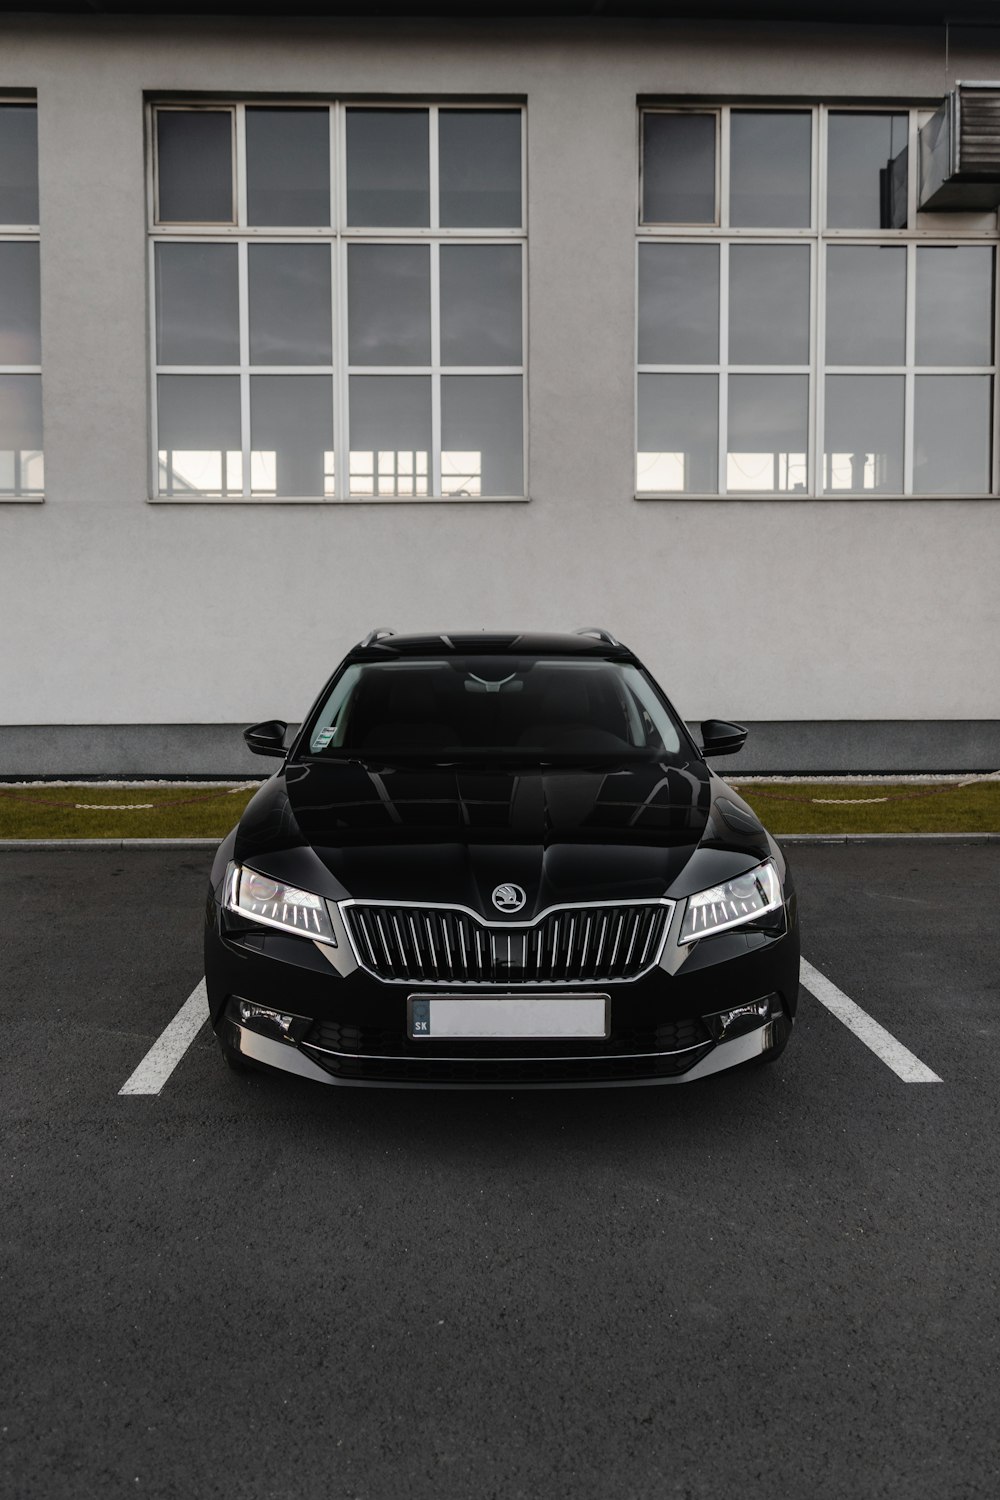 Schwarzes BMW-Auto auf Parkplatz geparkt